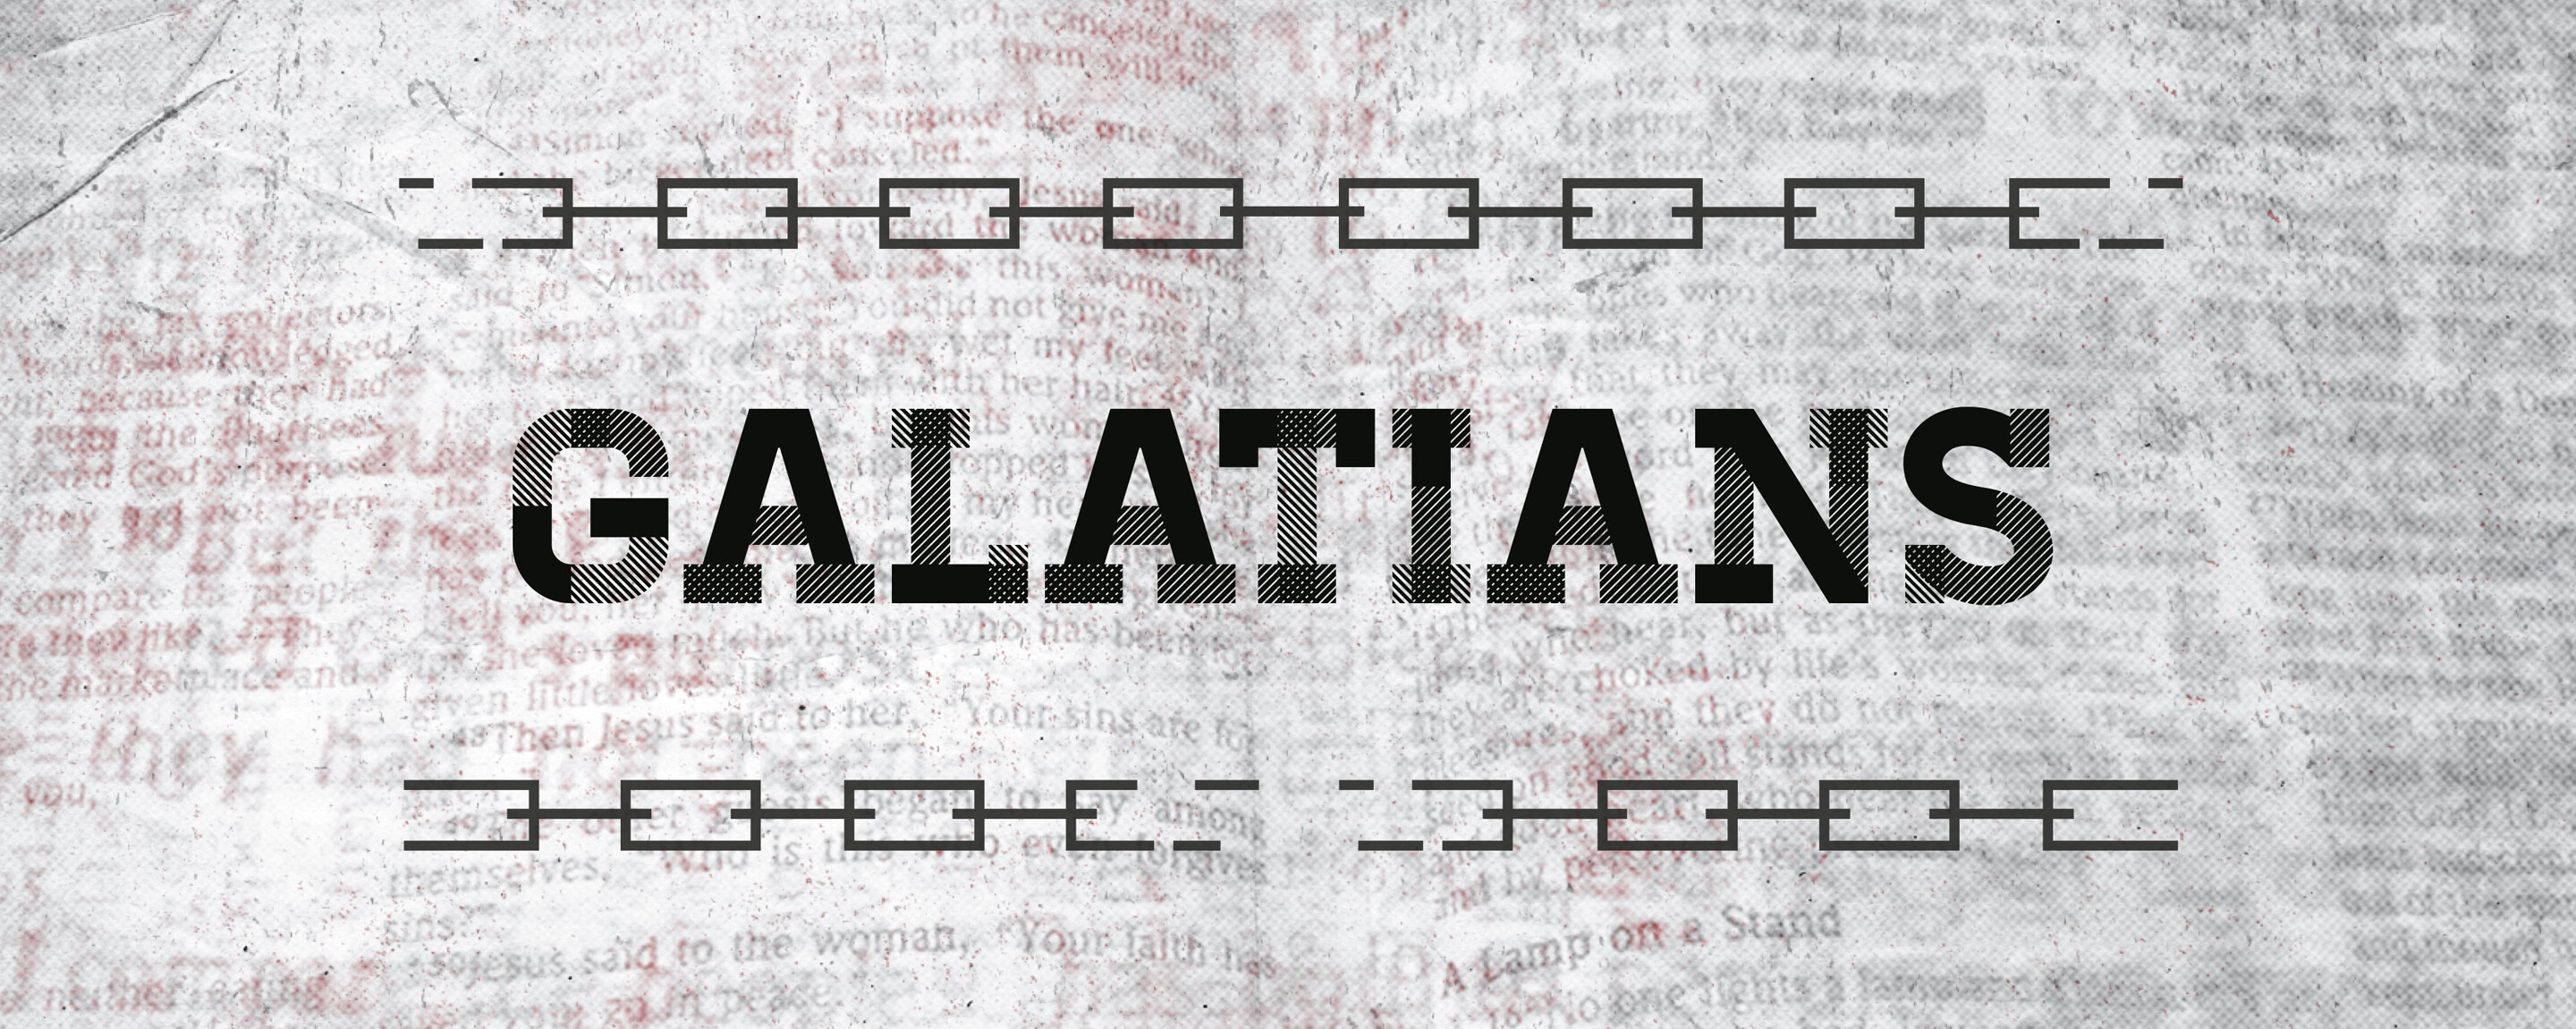 Galatians Pt. 4 | No Prerequisites for Grace